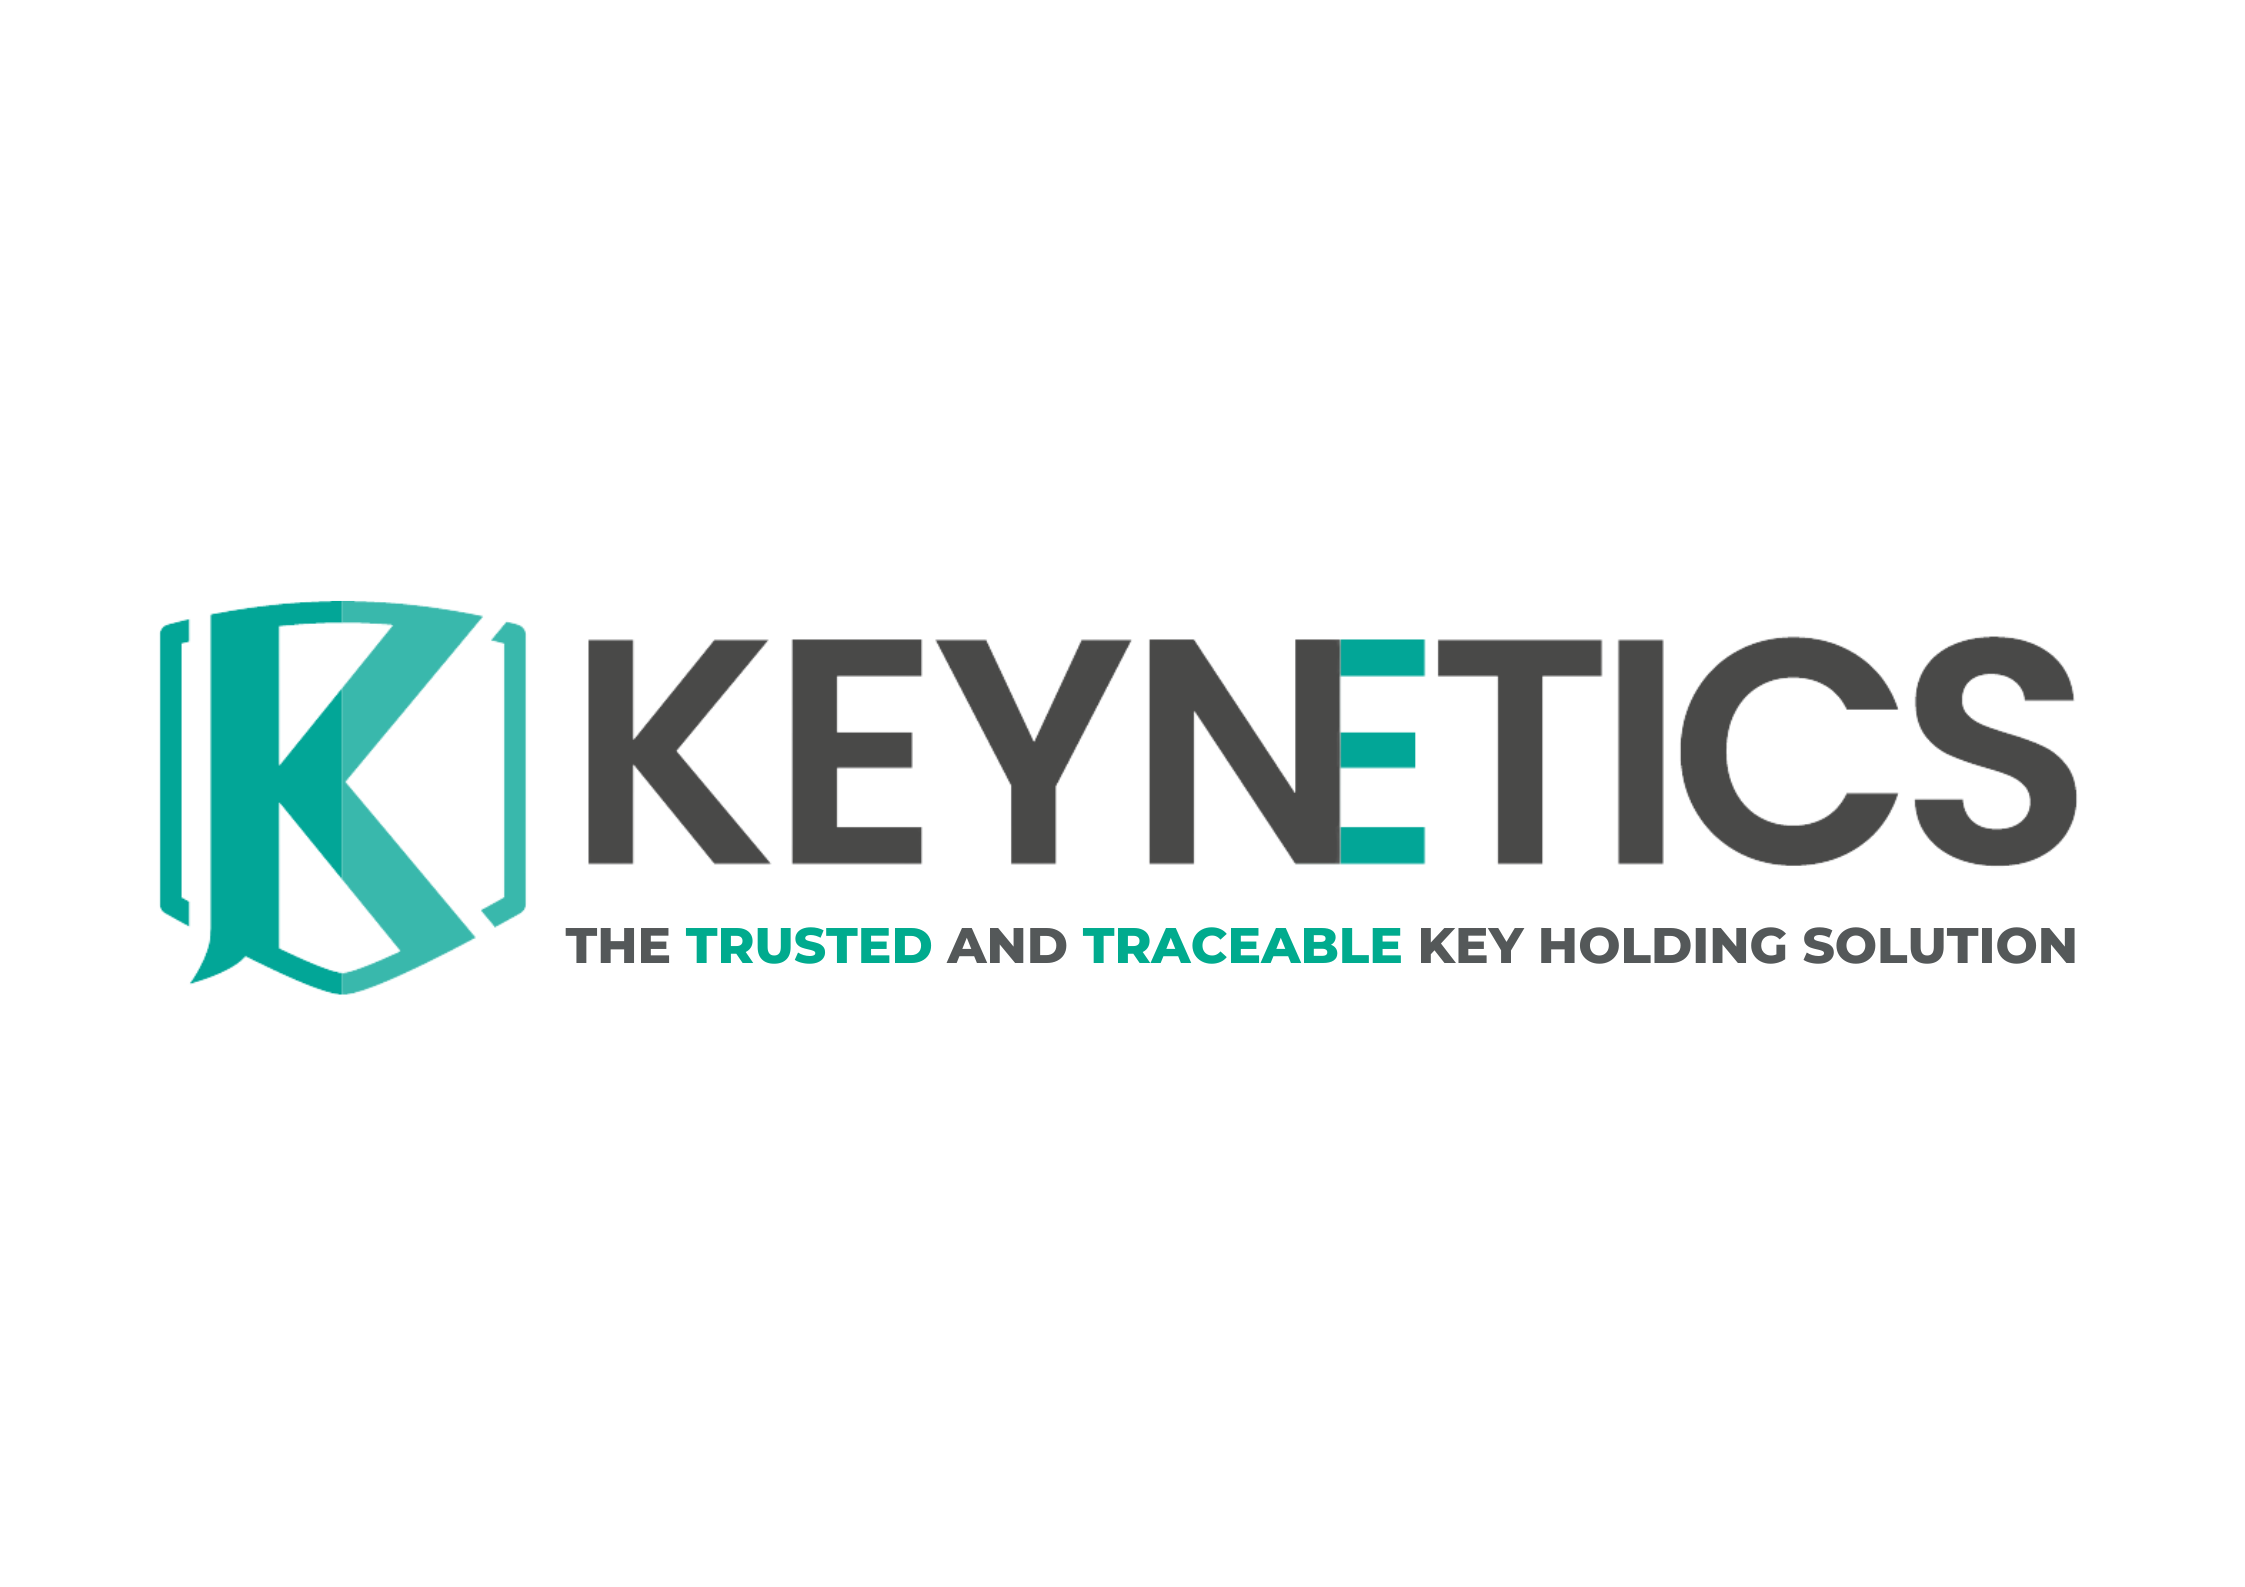 Keynetics-logo.webp